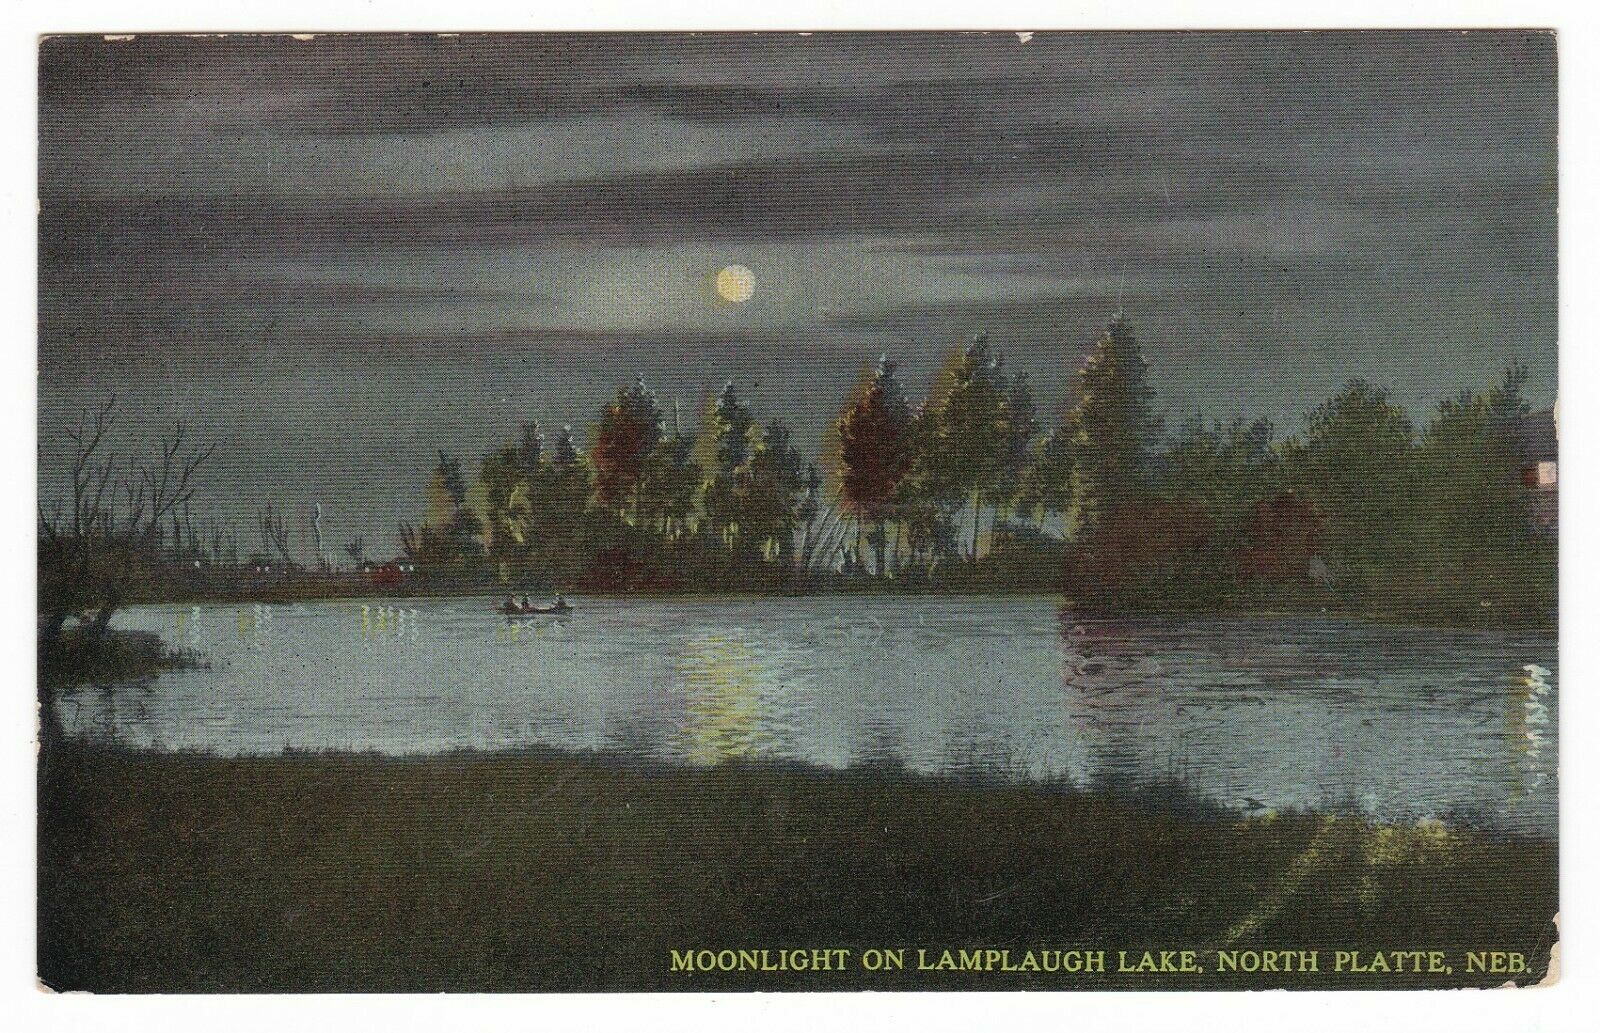 1912 North Platte Nebraska Moon On Lake Lamplaugh Canoe Vintage Postcard Ne Old